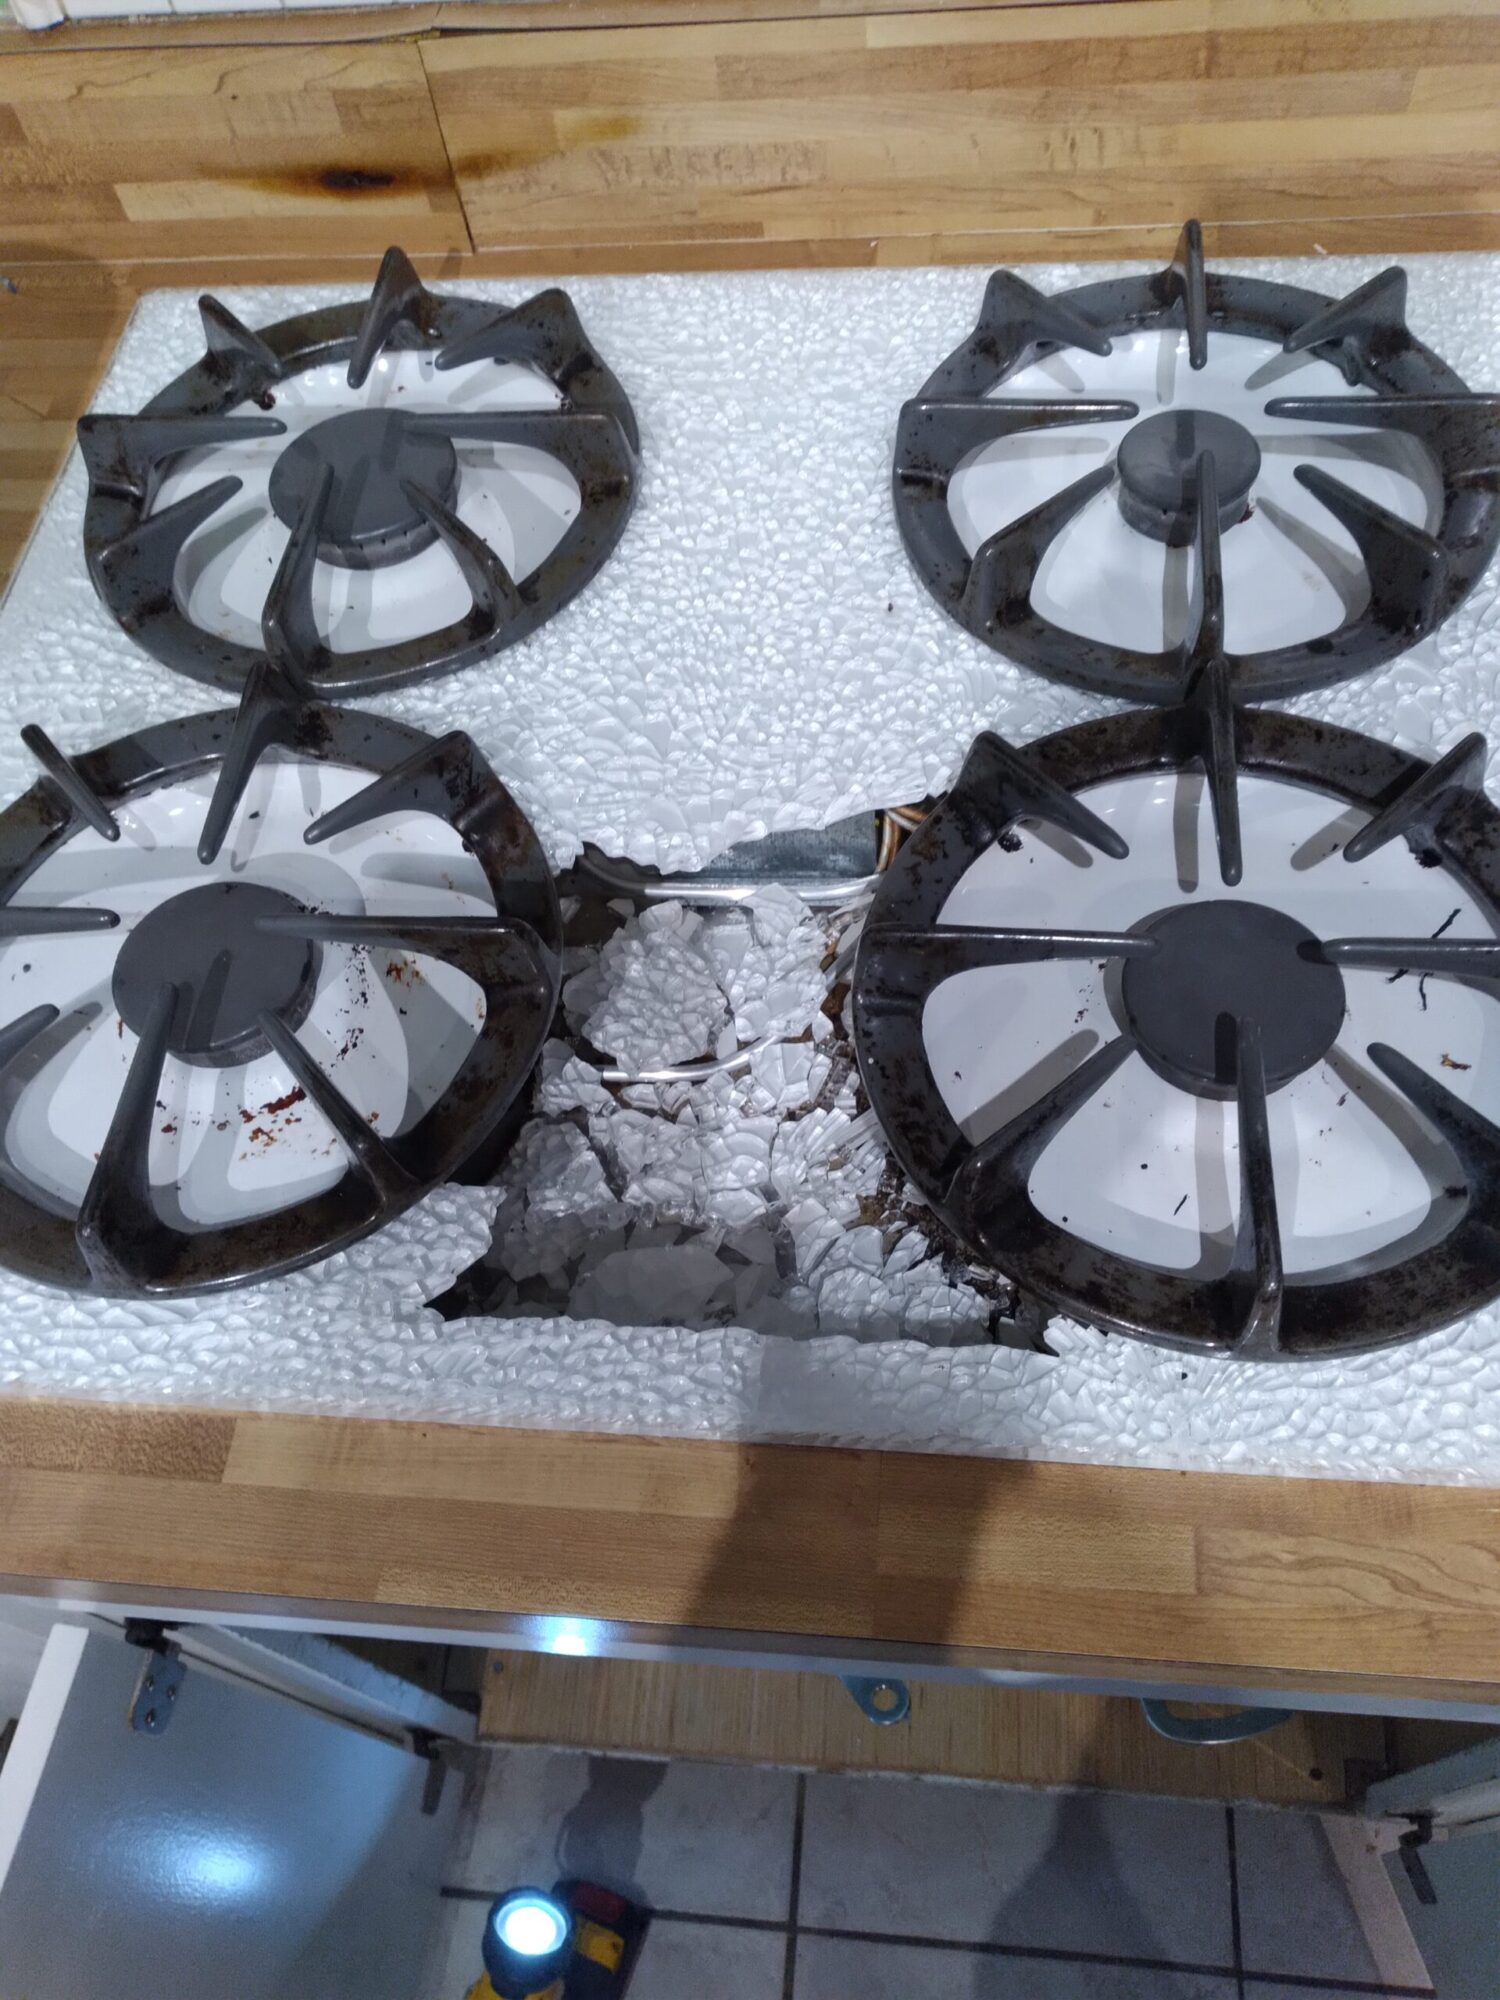 appliance repair stove repair gas stove top glass broken magnolia ln grand island eustis fl 32726